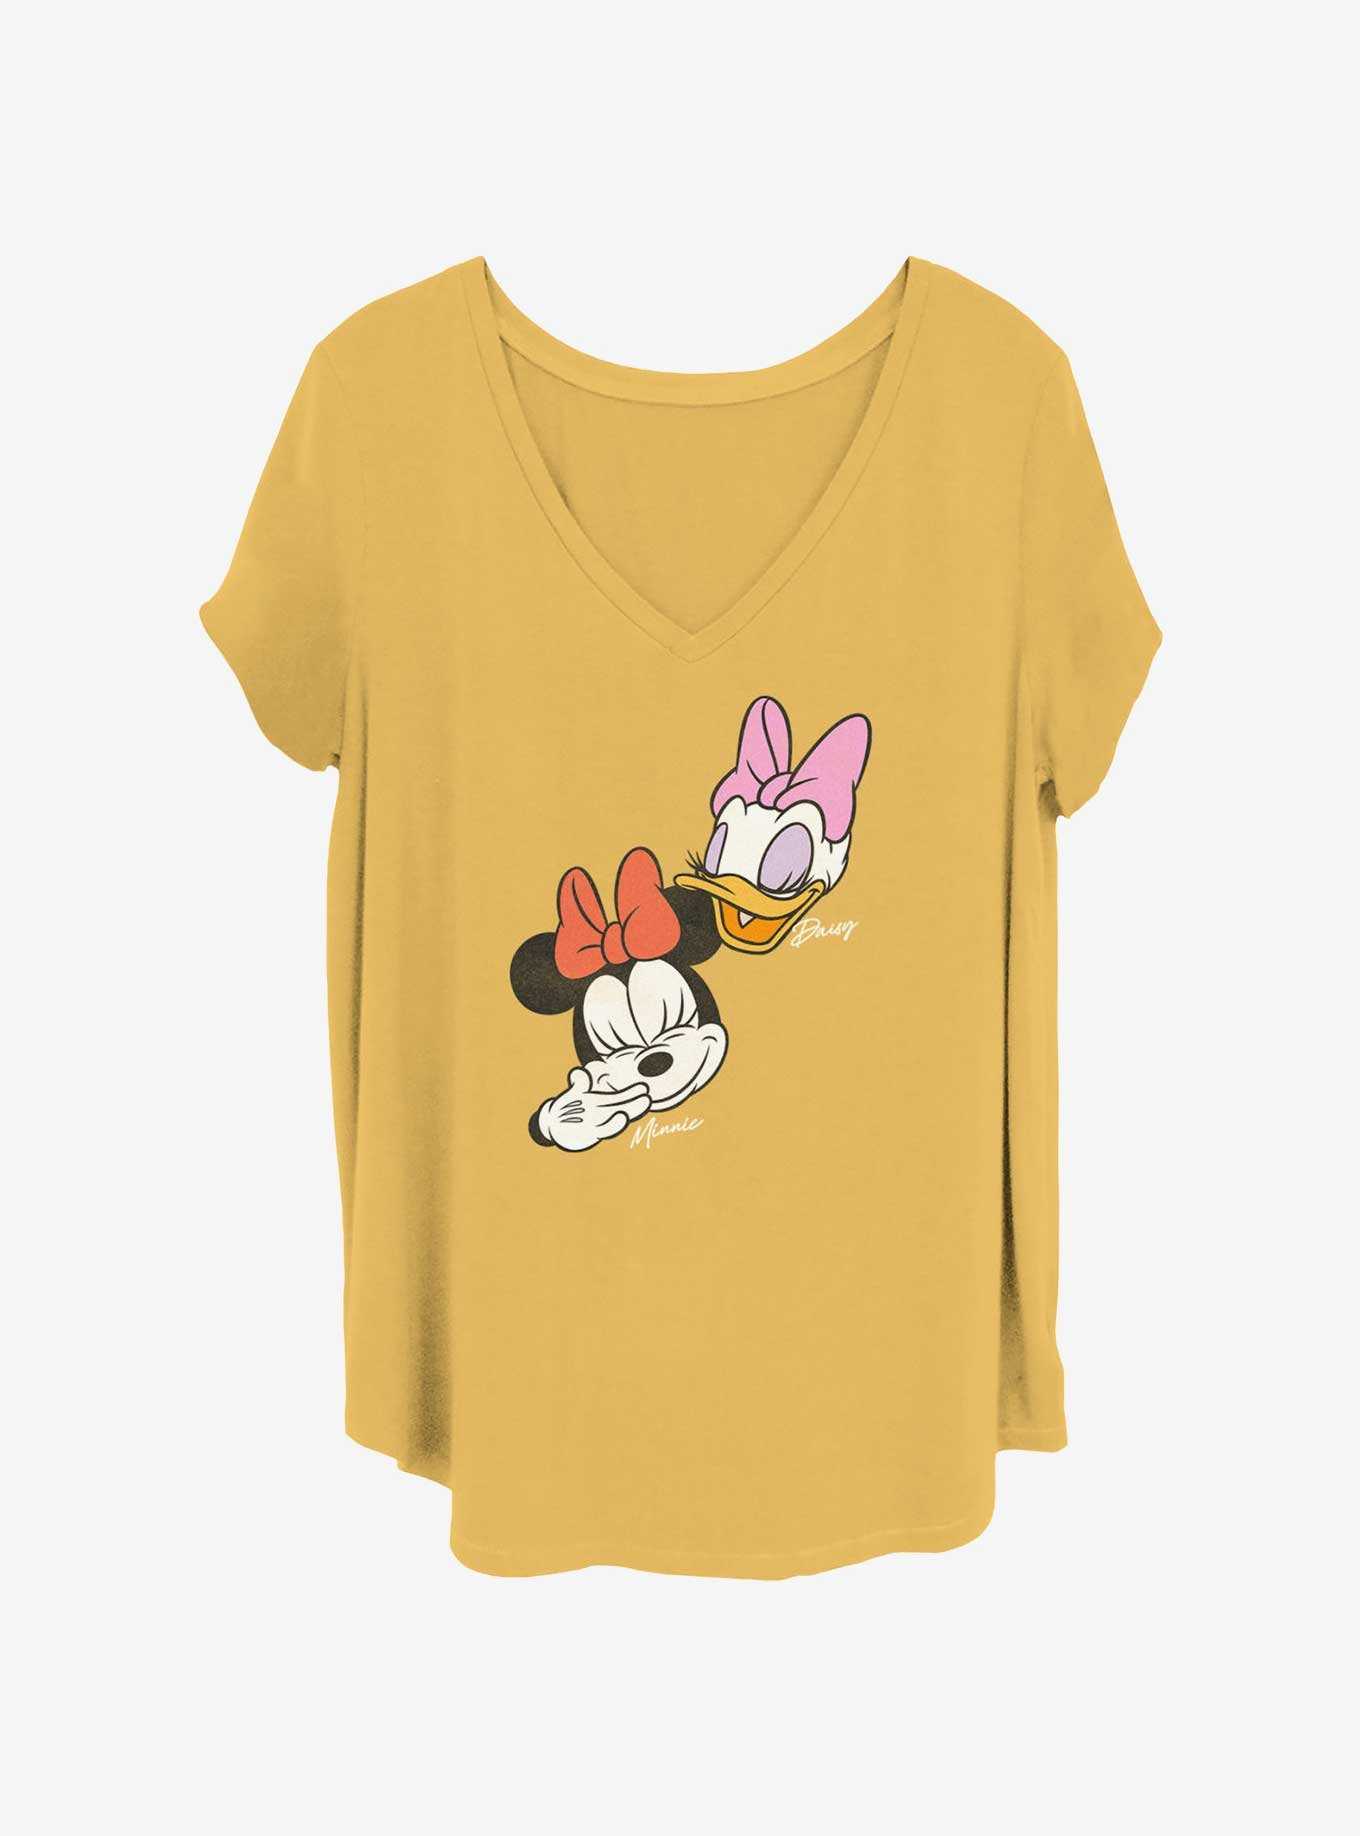 Disney Minnie Mouse & Daisy Duck Laugh Girls T-Shirt Plus Size, , hi-res